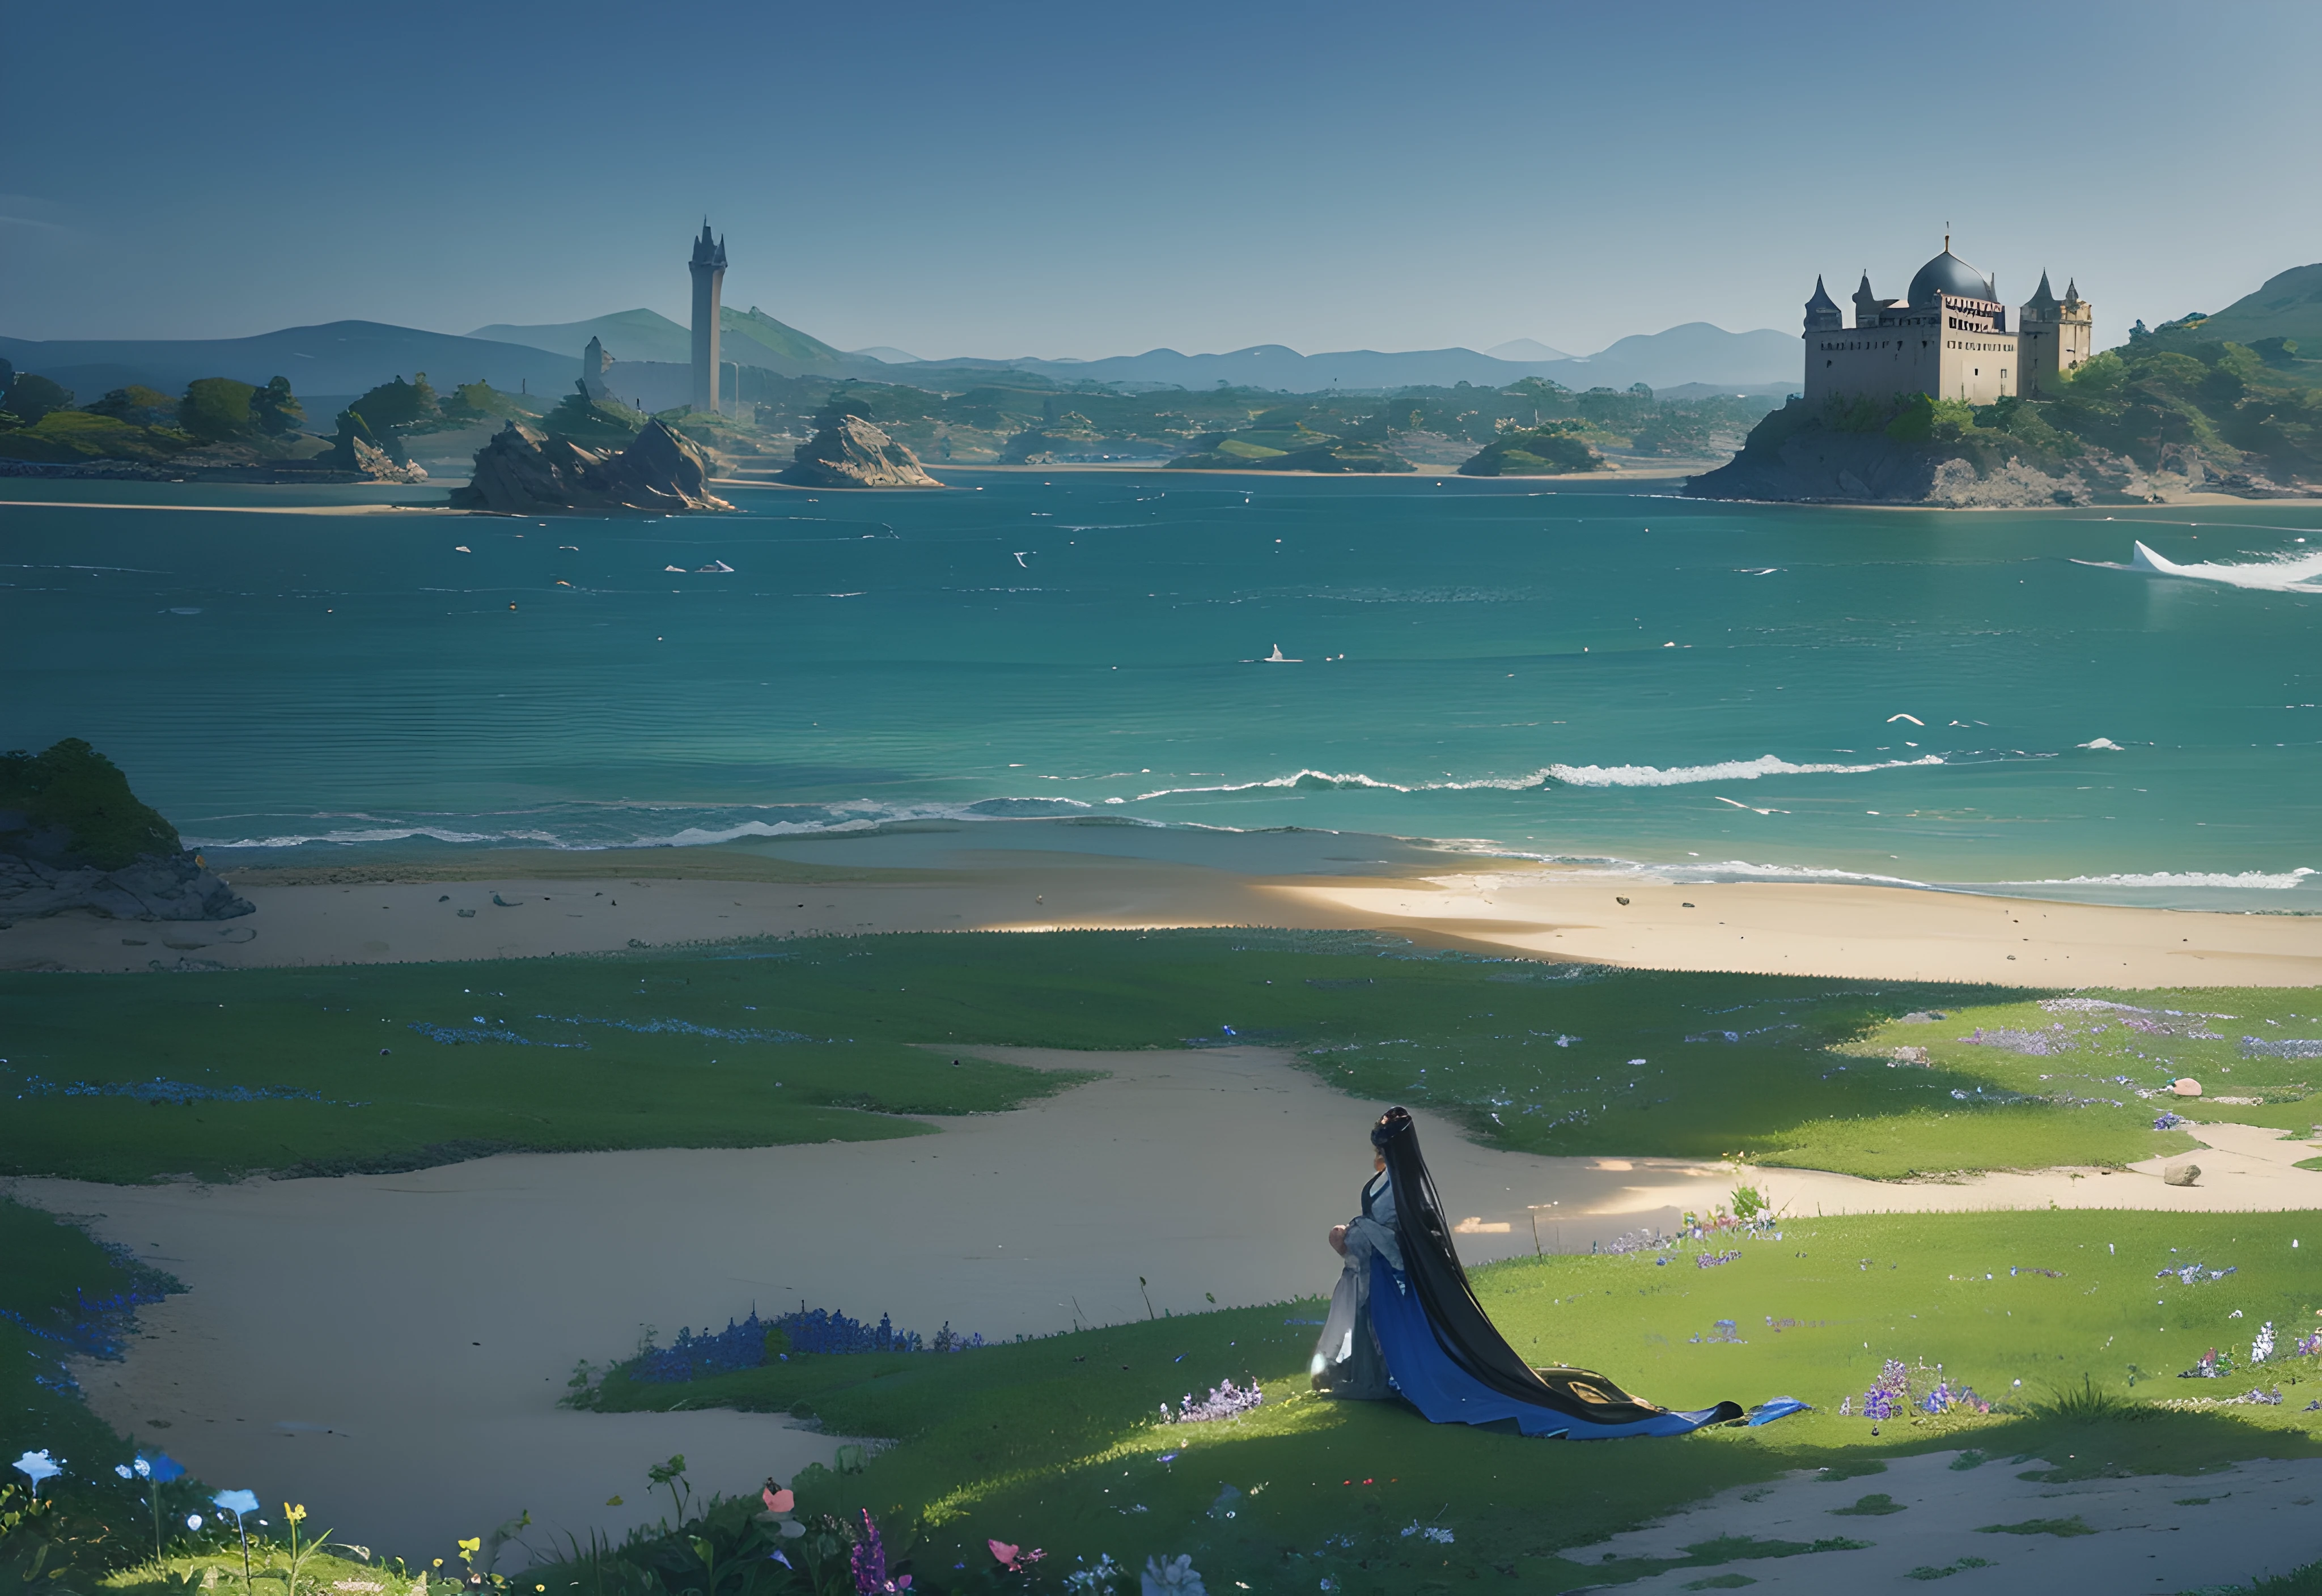 Junto a una isla de piedra pómez en la bahía de Baiae,
Y vi en sueños viejos palacios y torres temblando dentro del día más intenso de la ola,
Todo cubierto de musgo azul y flores.